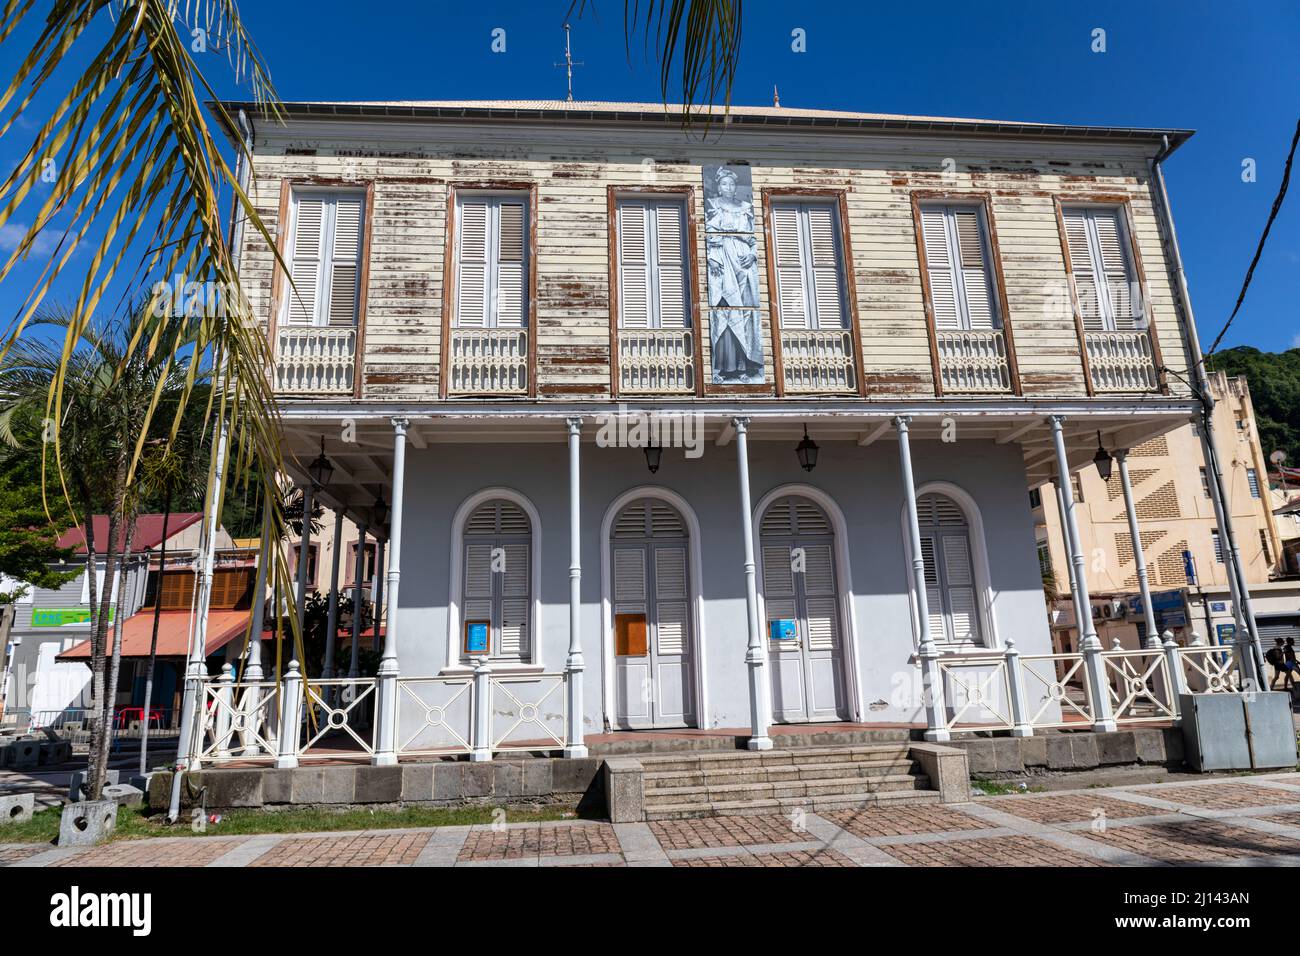 Chambre de commerce (Maison de la Bourse) de Saint-Pierre, Martinique, Antilles Françaises Banque D'Images